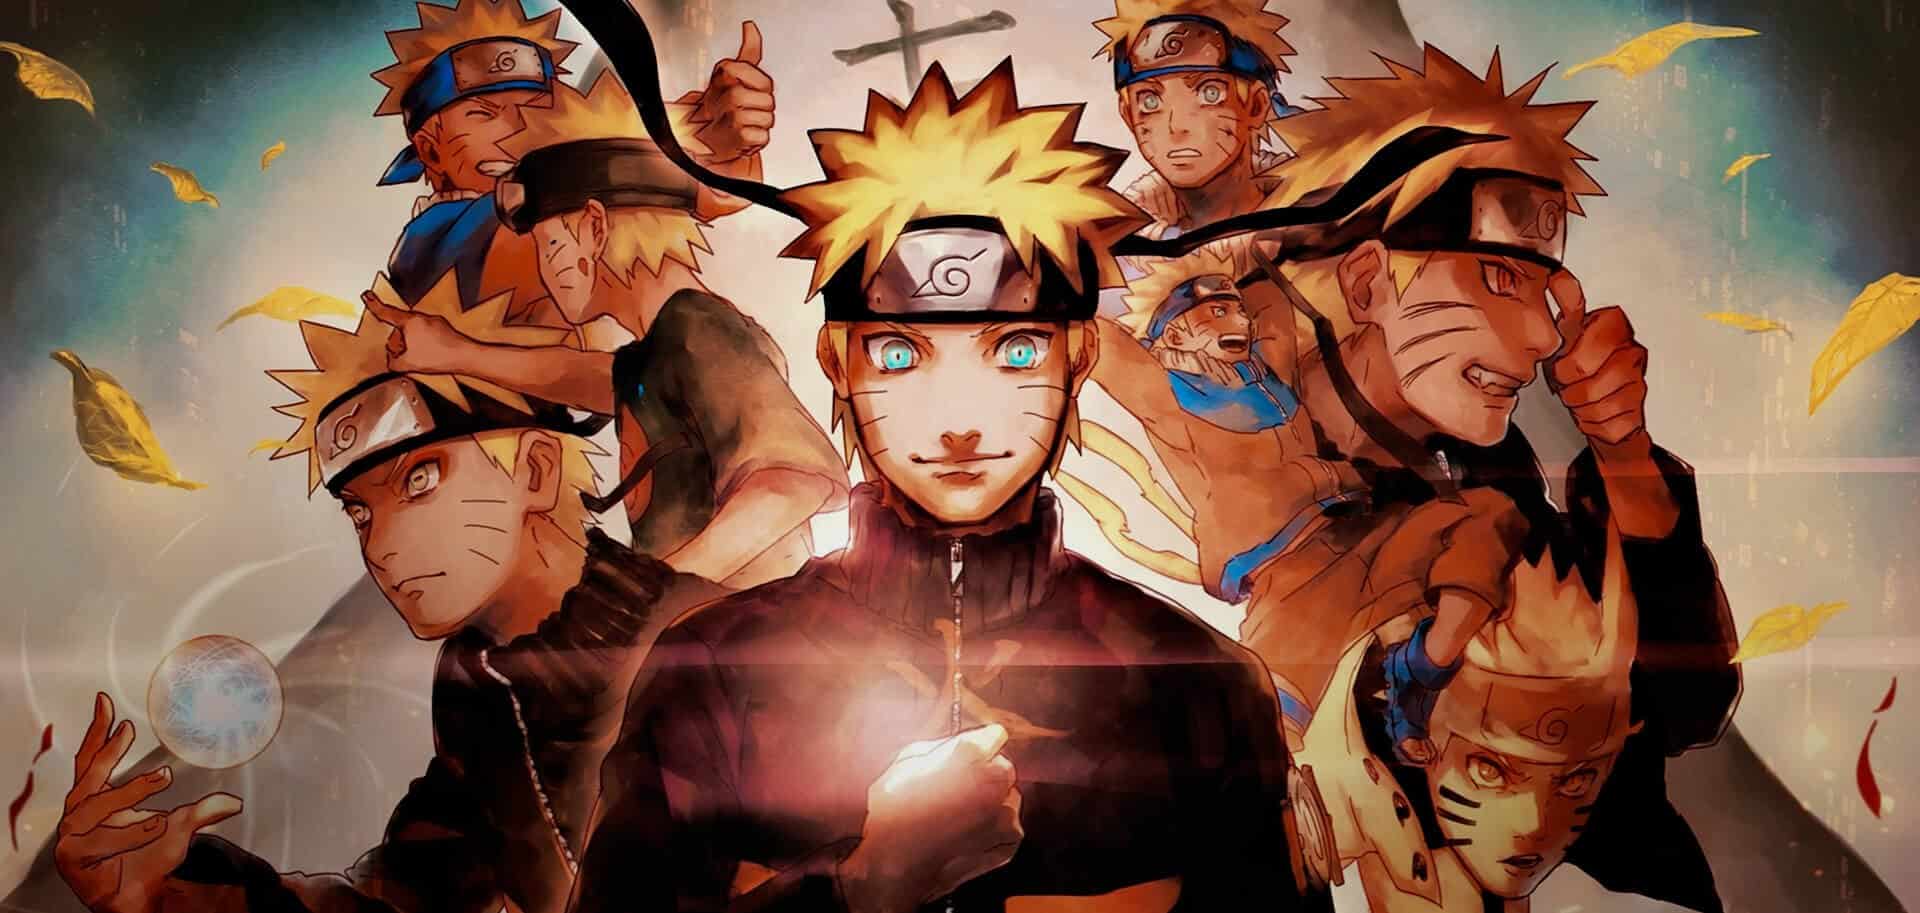 Capa: A Jornada do Herói, com Naruto